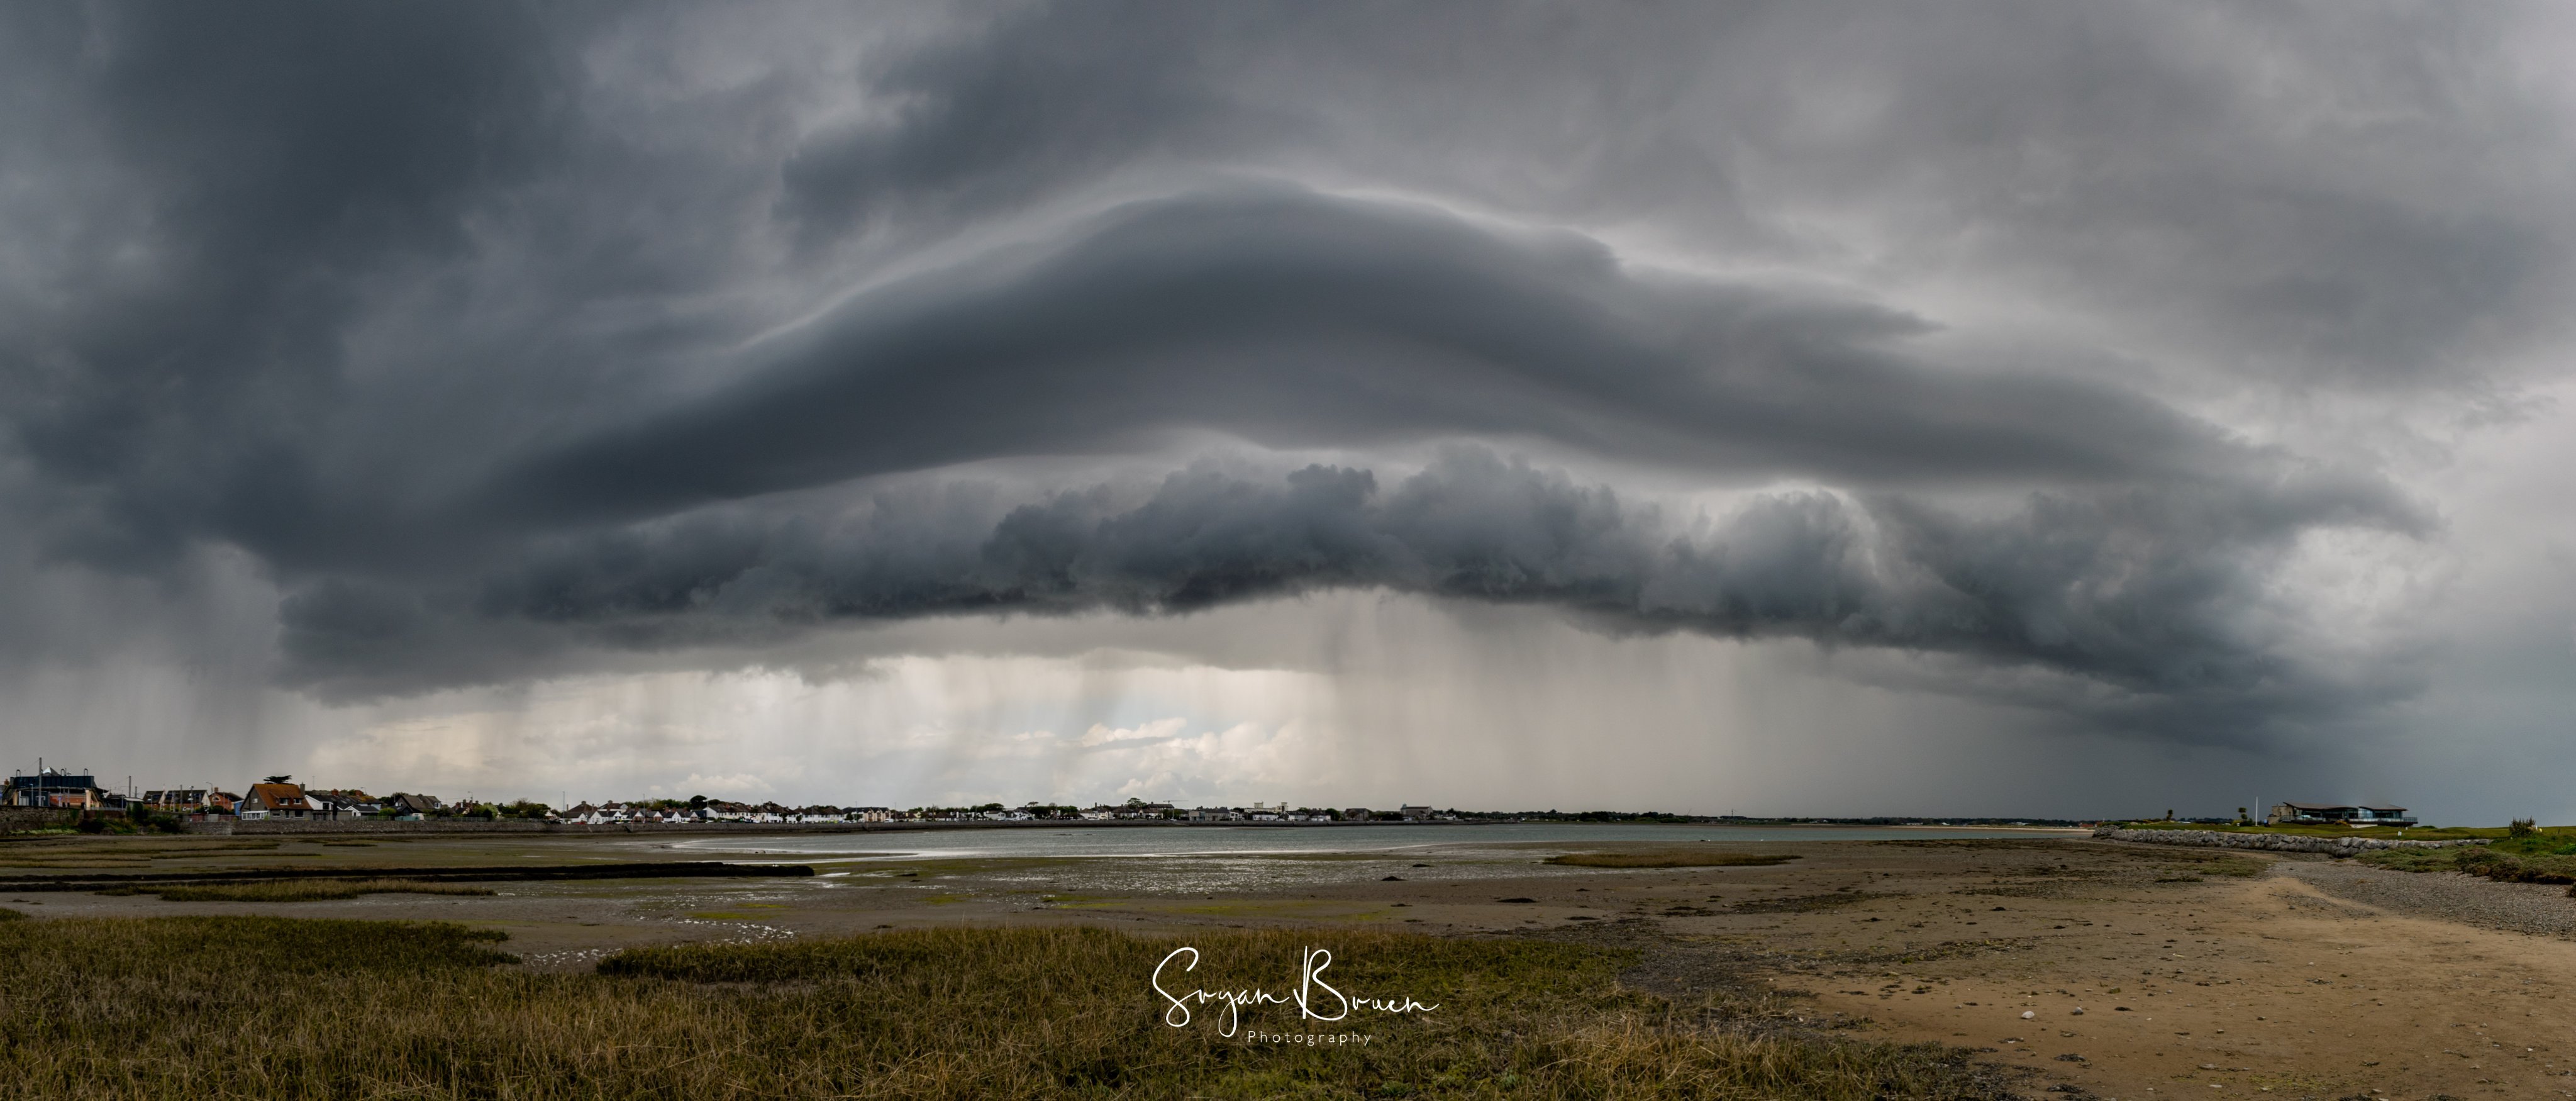 1st Place Shelf cloud at Burrow Beach, Sutton, Dublin by Sryan Bruen @sryanbruenphoto